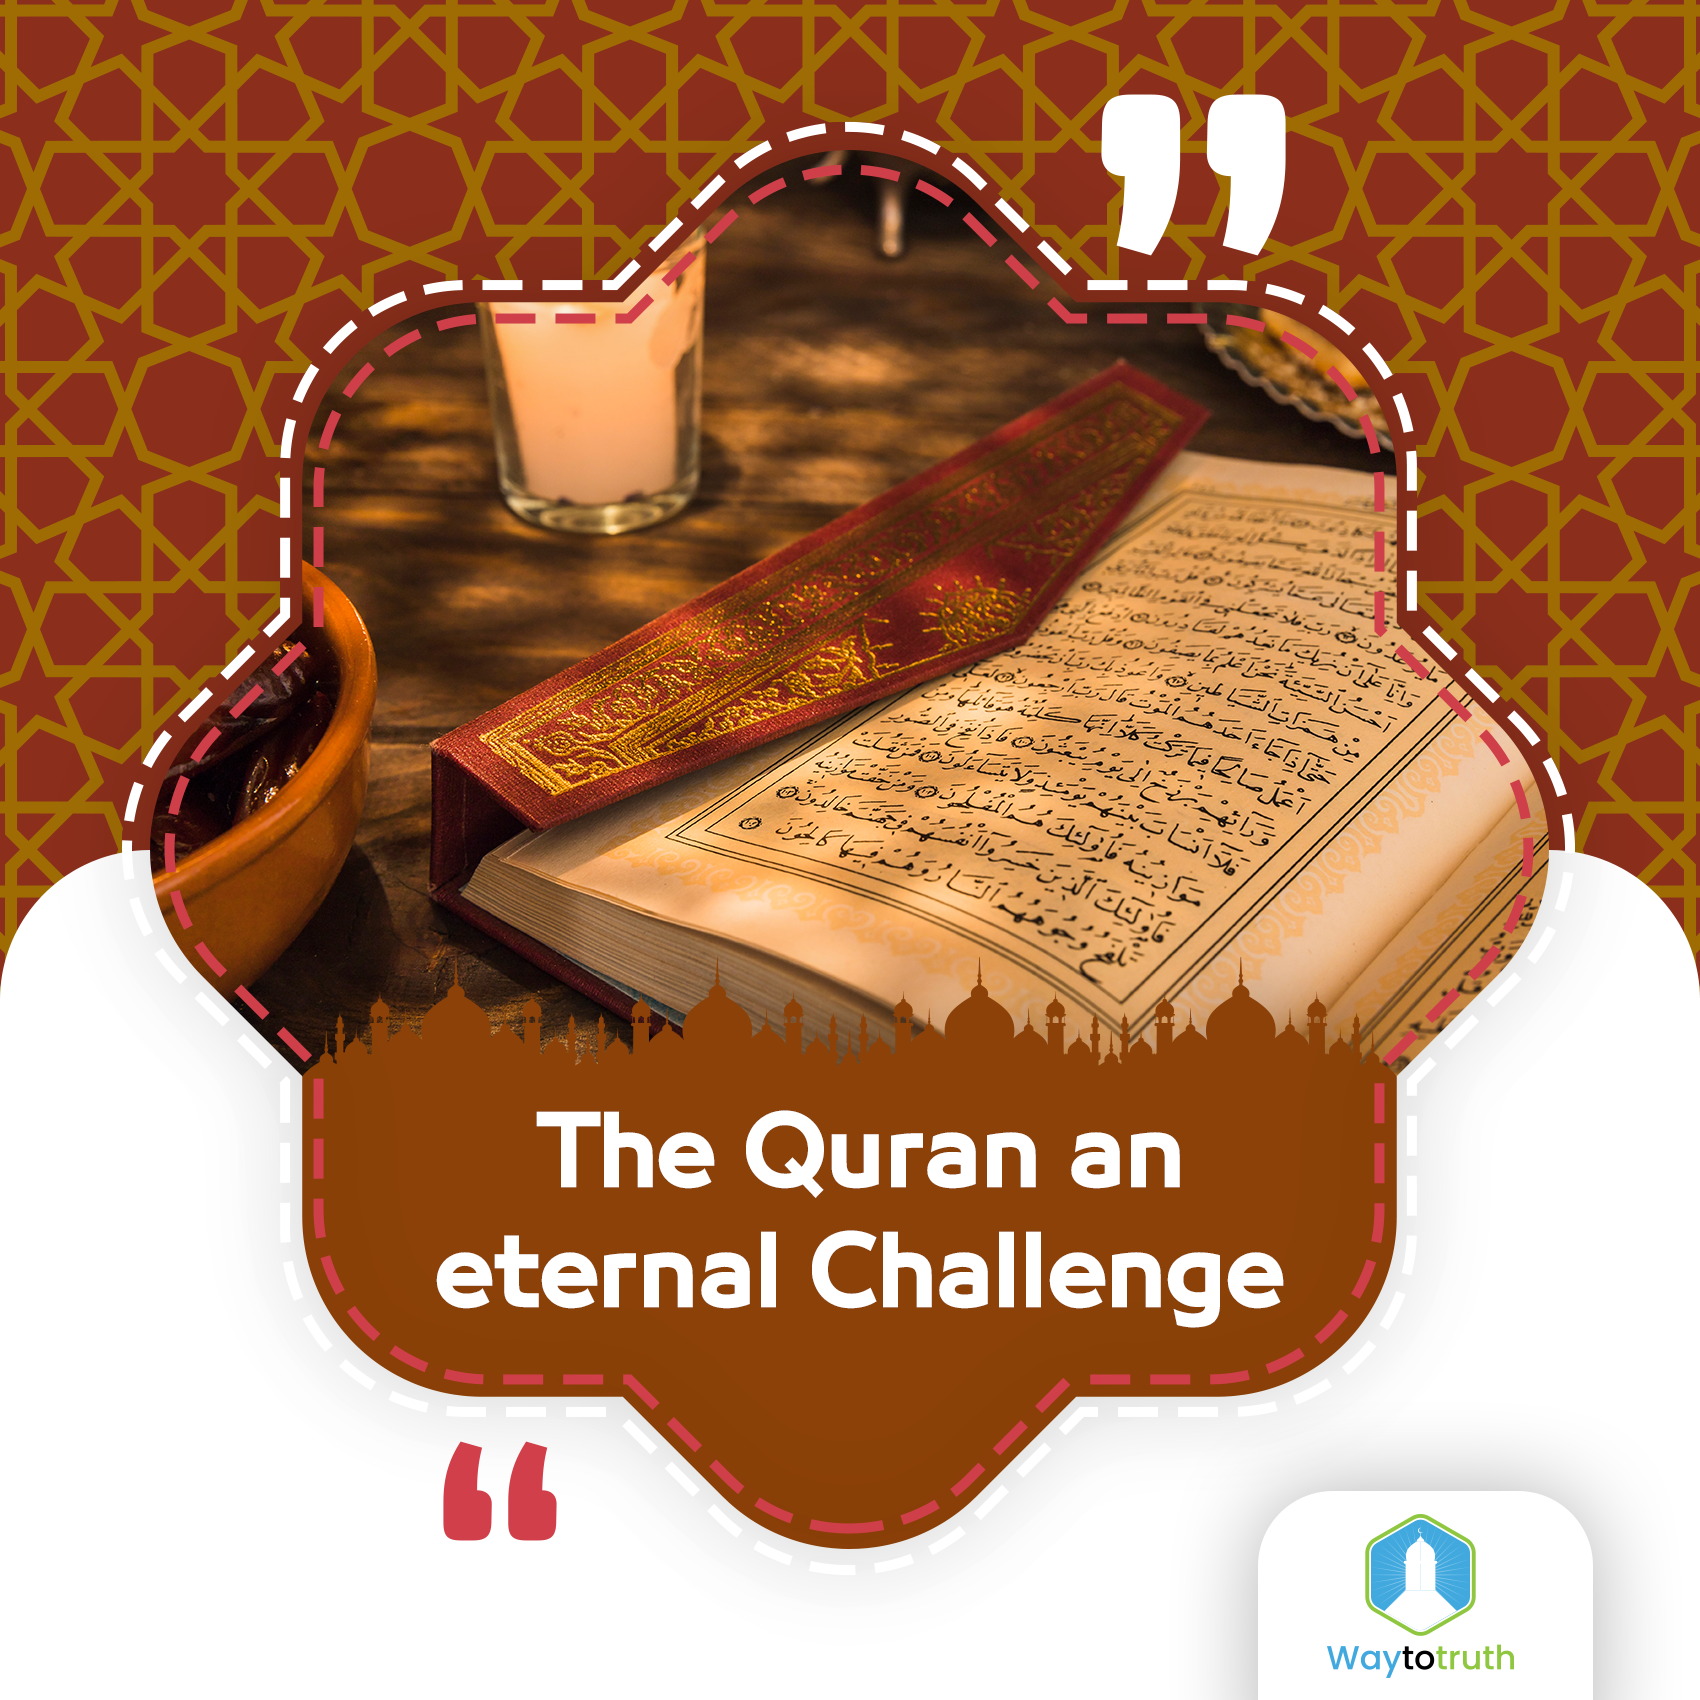 The Quran an eternal Challenge